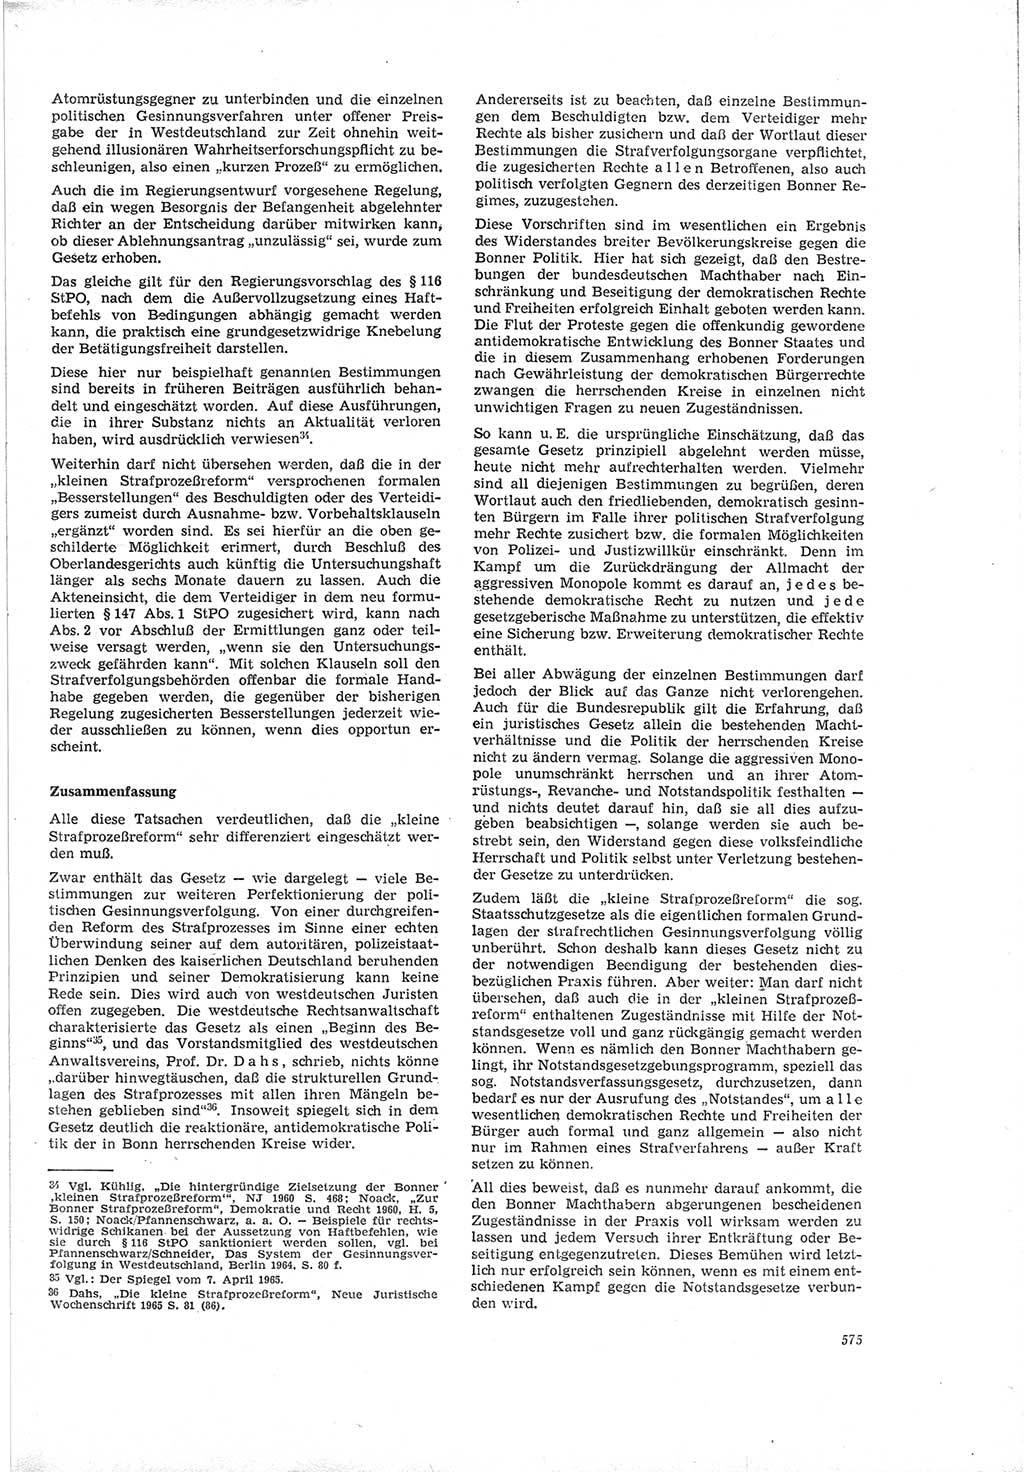 Neue Justiz (NJ), Zeitschrift für Recht und Rechtswissenschaft [Deutsche Demokratische Republik (DDR)], 19. Jahrgang 1965, Seite 575 (NJ DDR 1965, S. 575)